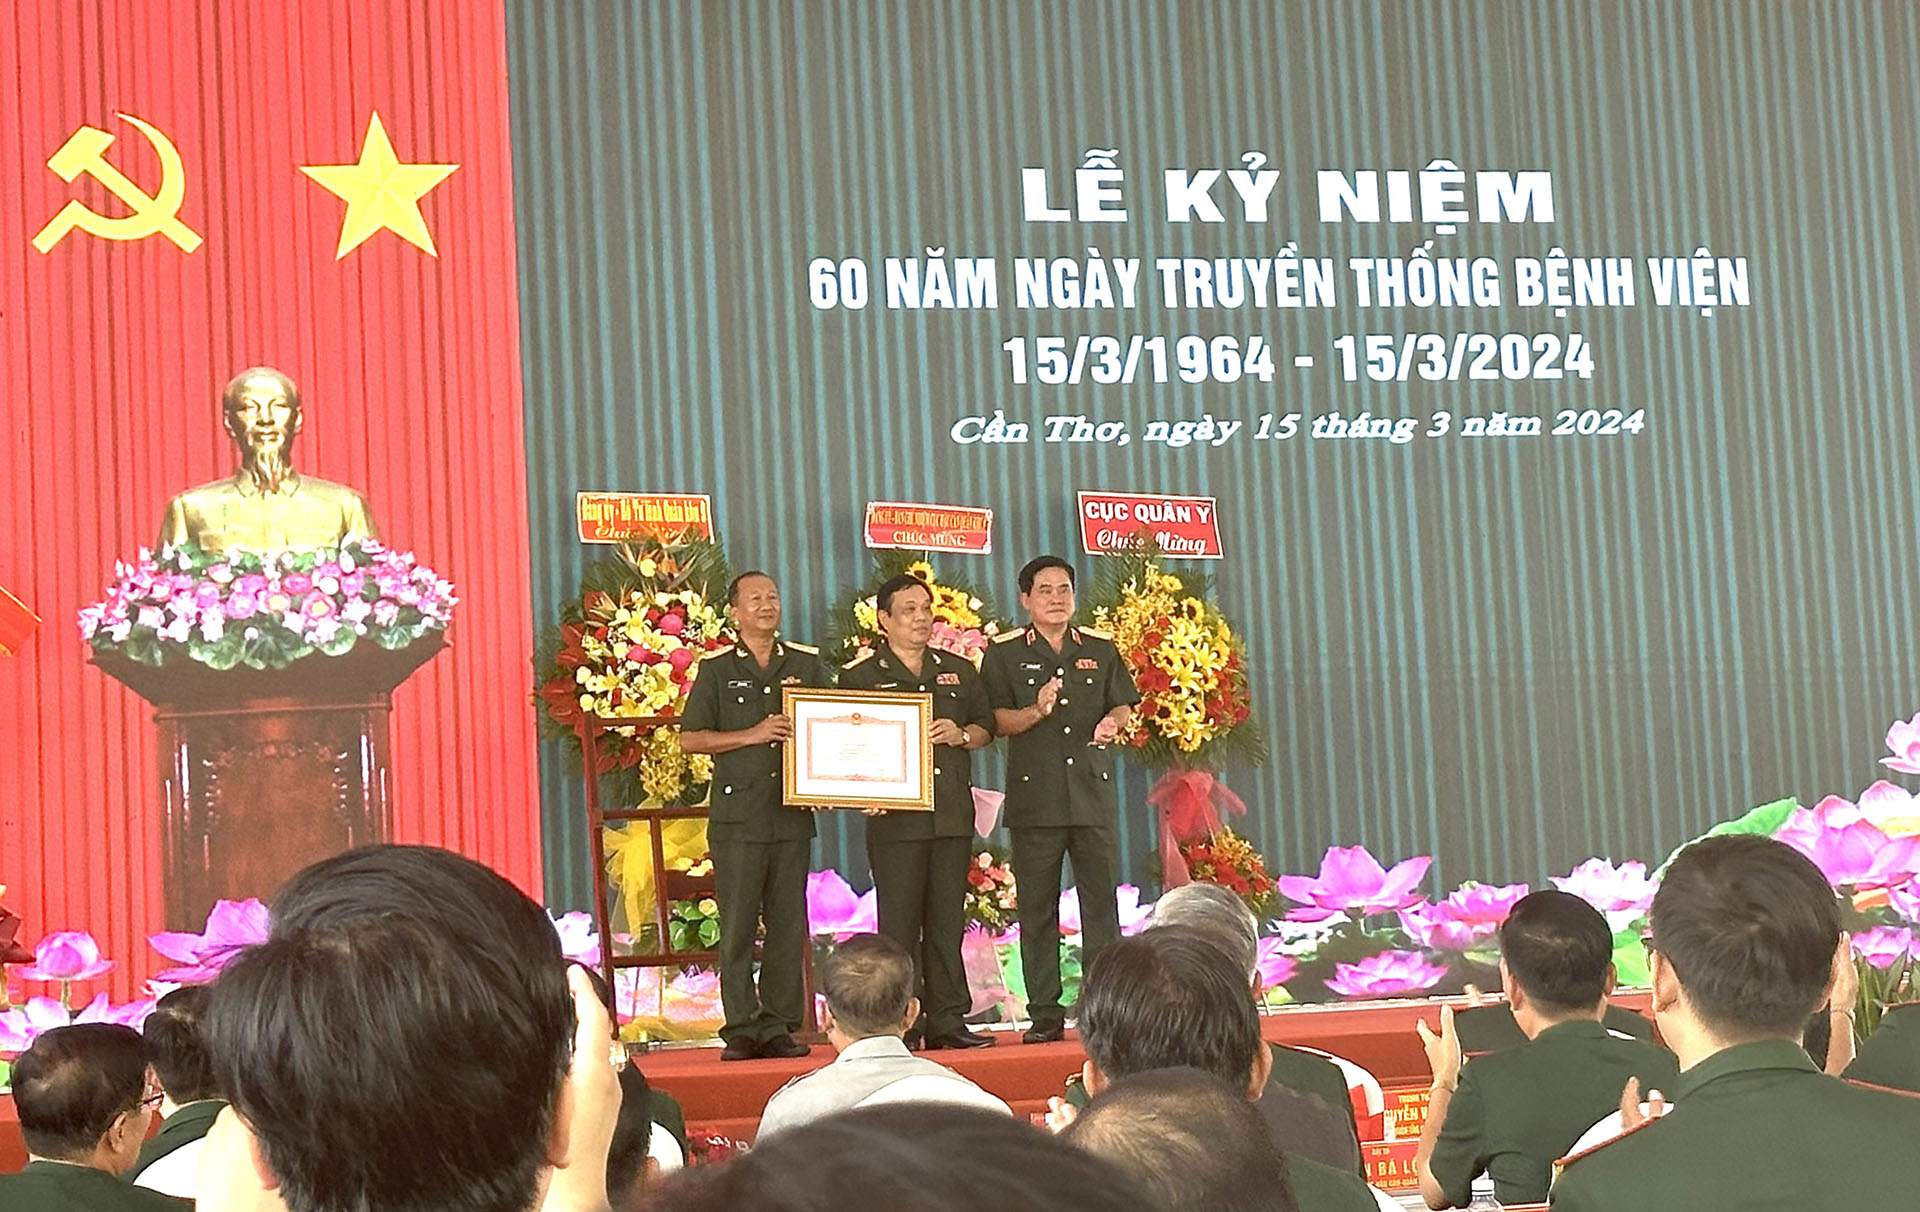 Lãnh đạo Bệnh viện Quân y 121 nhận bằng khen của Thủ tướng Chính phủ